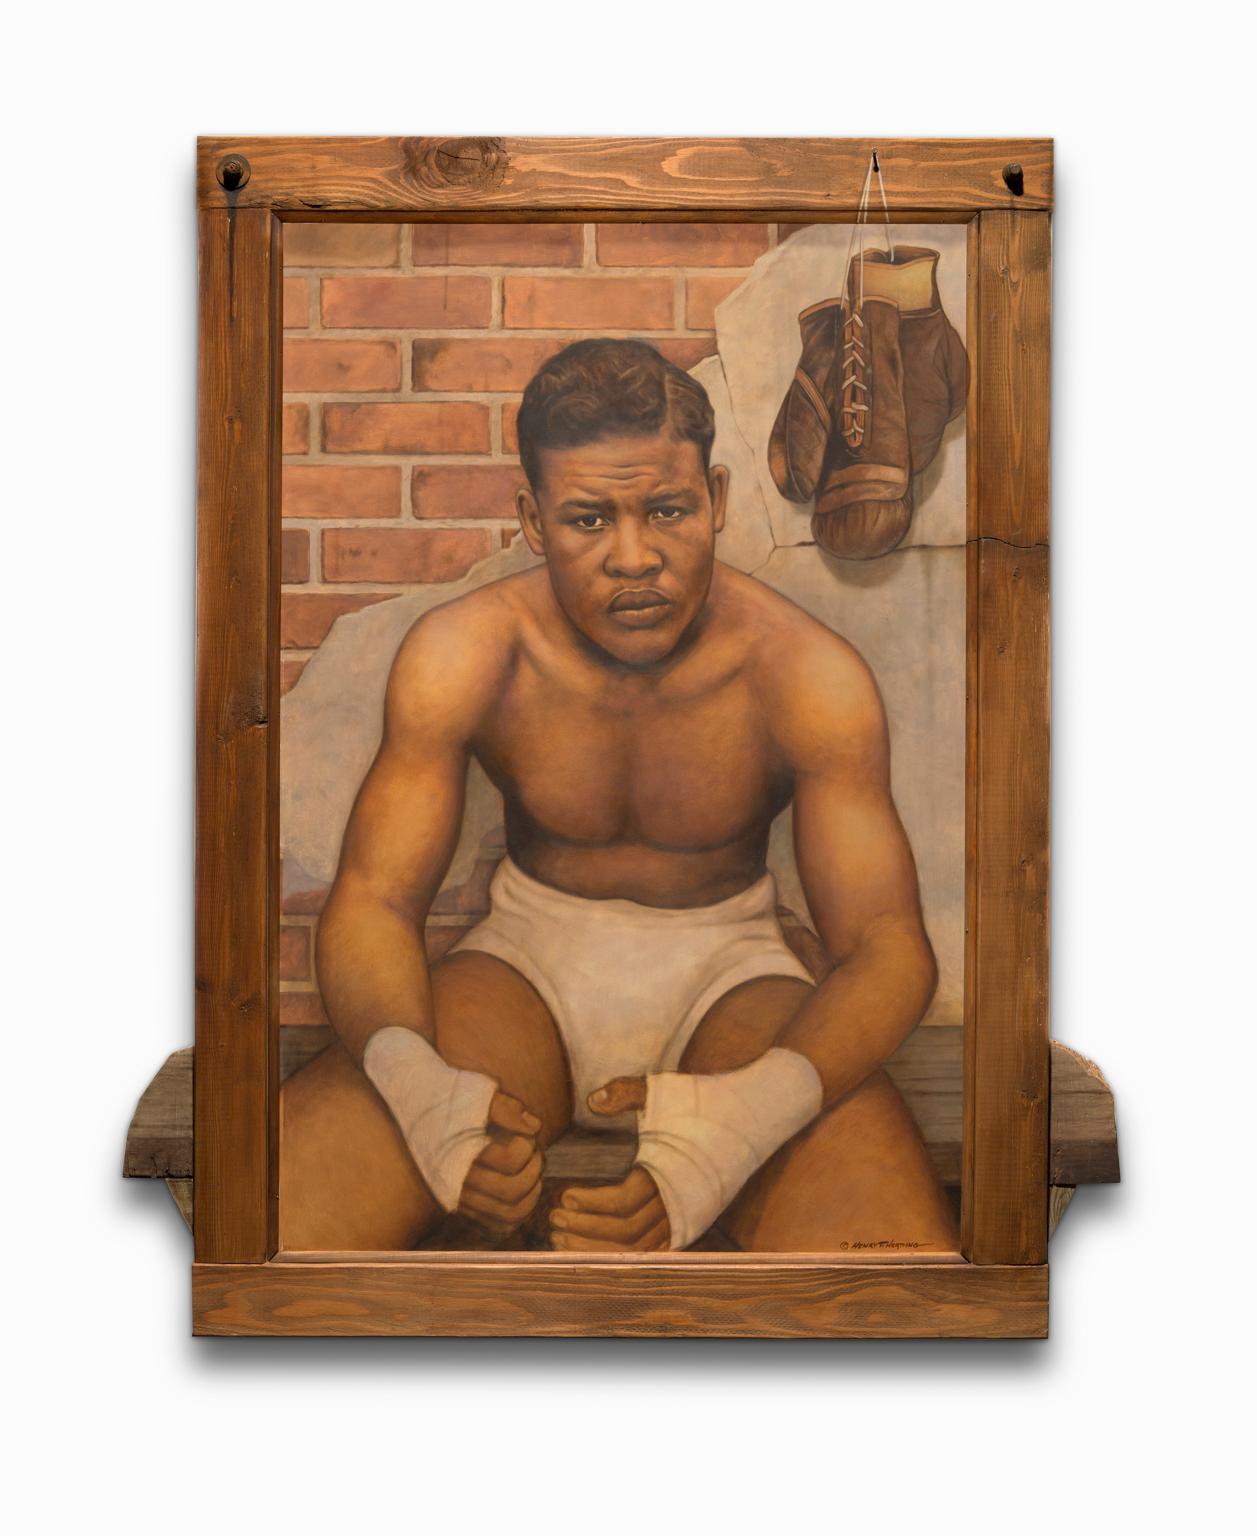 ""Joe Louis" Öl auf Karton mit Mischtechnik, ikonisches Porträt, afroamerikanischer Abstammung